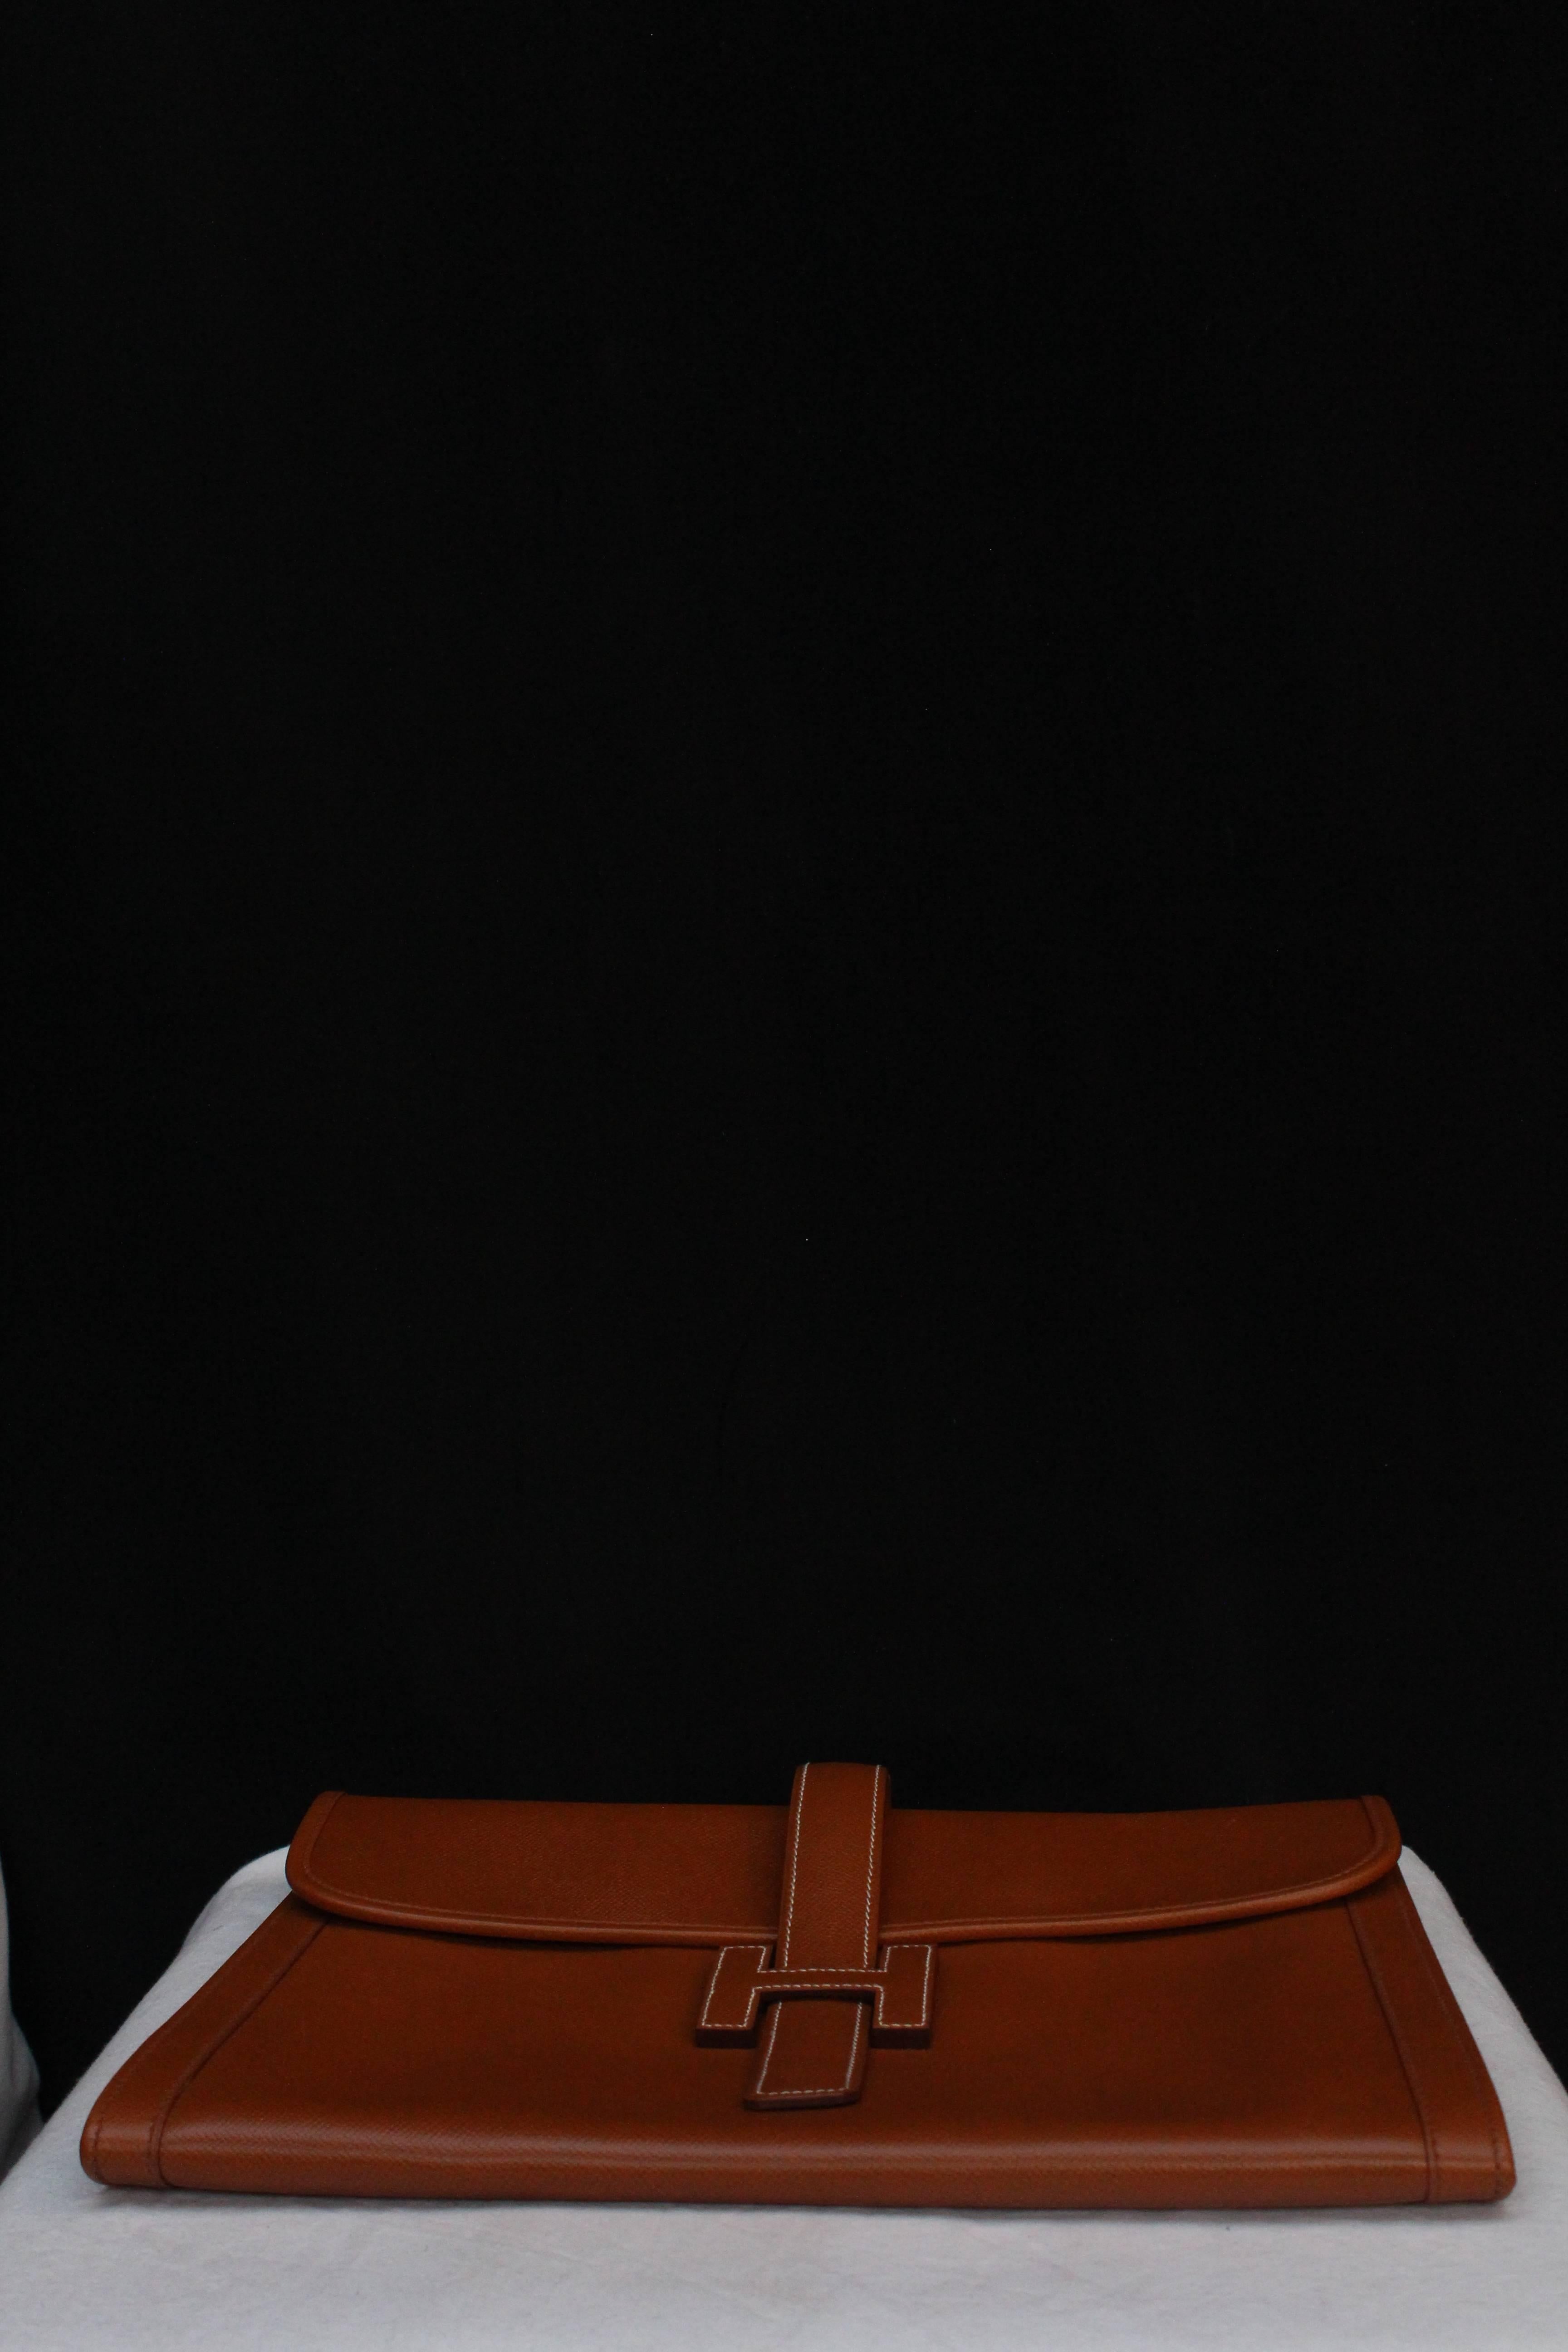 Women's or Men's Hermès “Jige” model clutch in tan togo leather